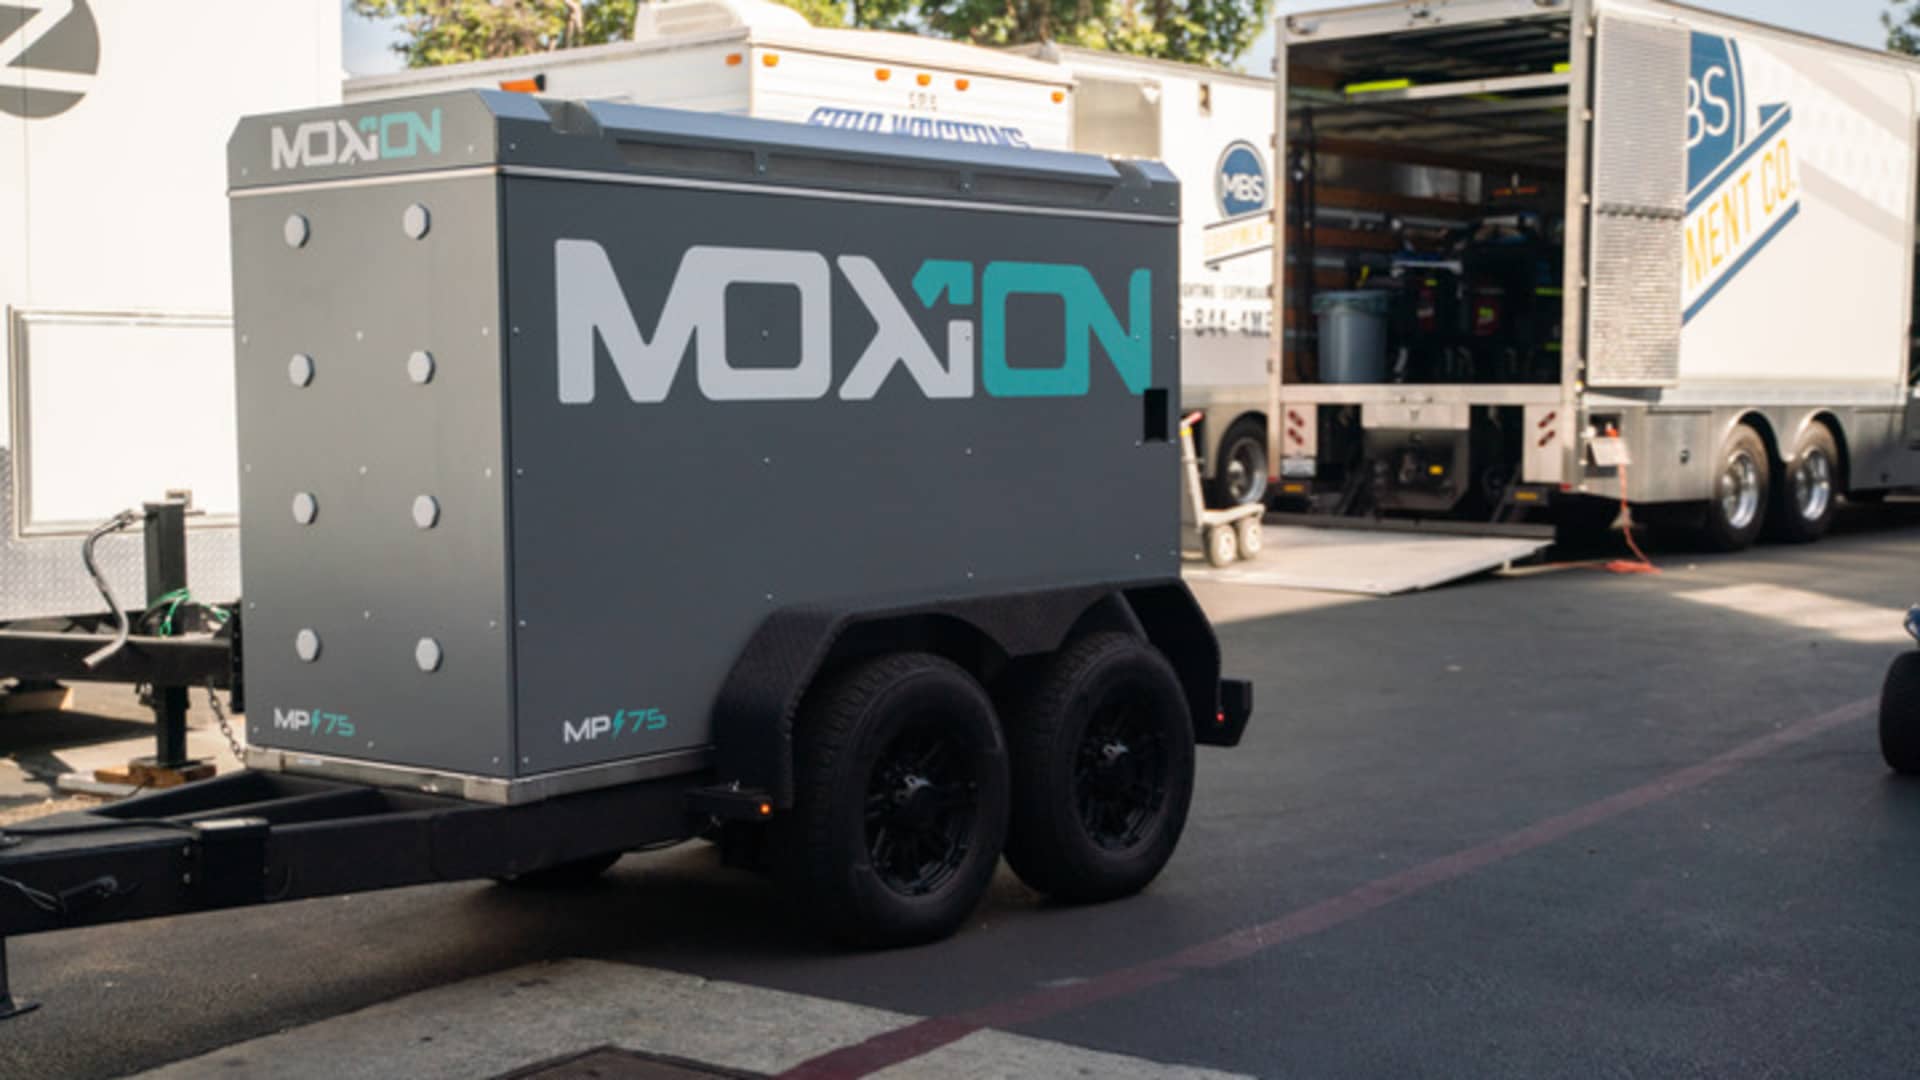 Amazon, Microsoft backing battery-powered generator startup Moxion